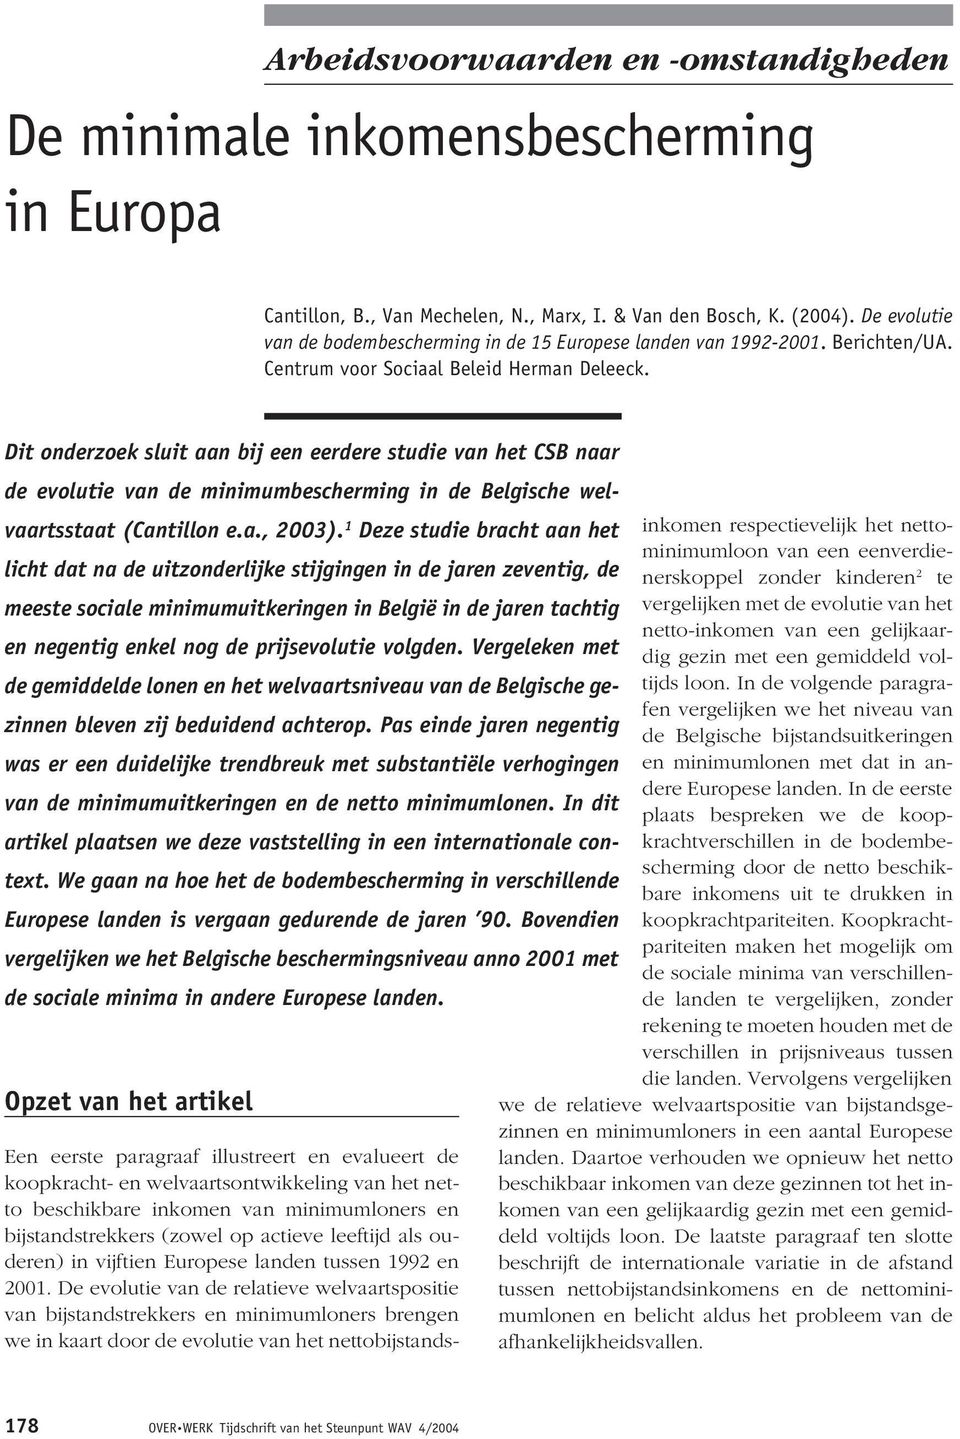 Dit onderzoek sluit aan bij een eerdere studie van het CSB naar de evolutie van de minimumbescherming in de Belgische welvaartsstaat (Cantillon e.a., 2003).